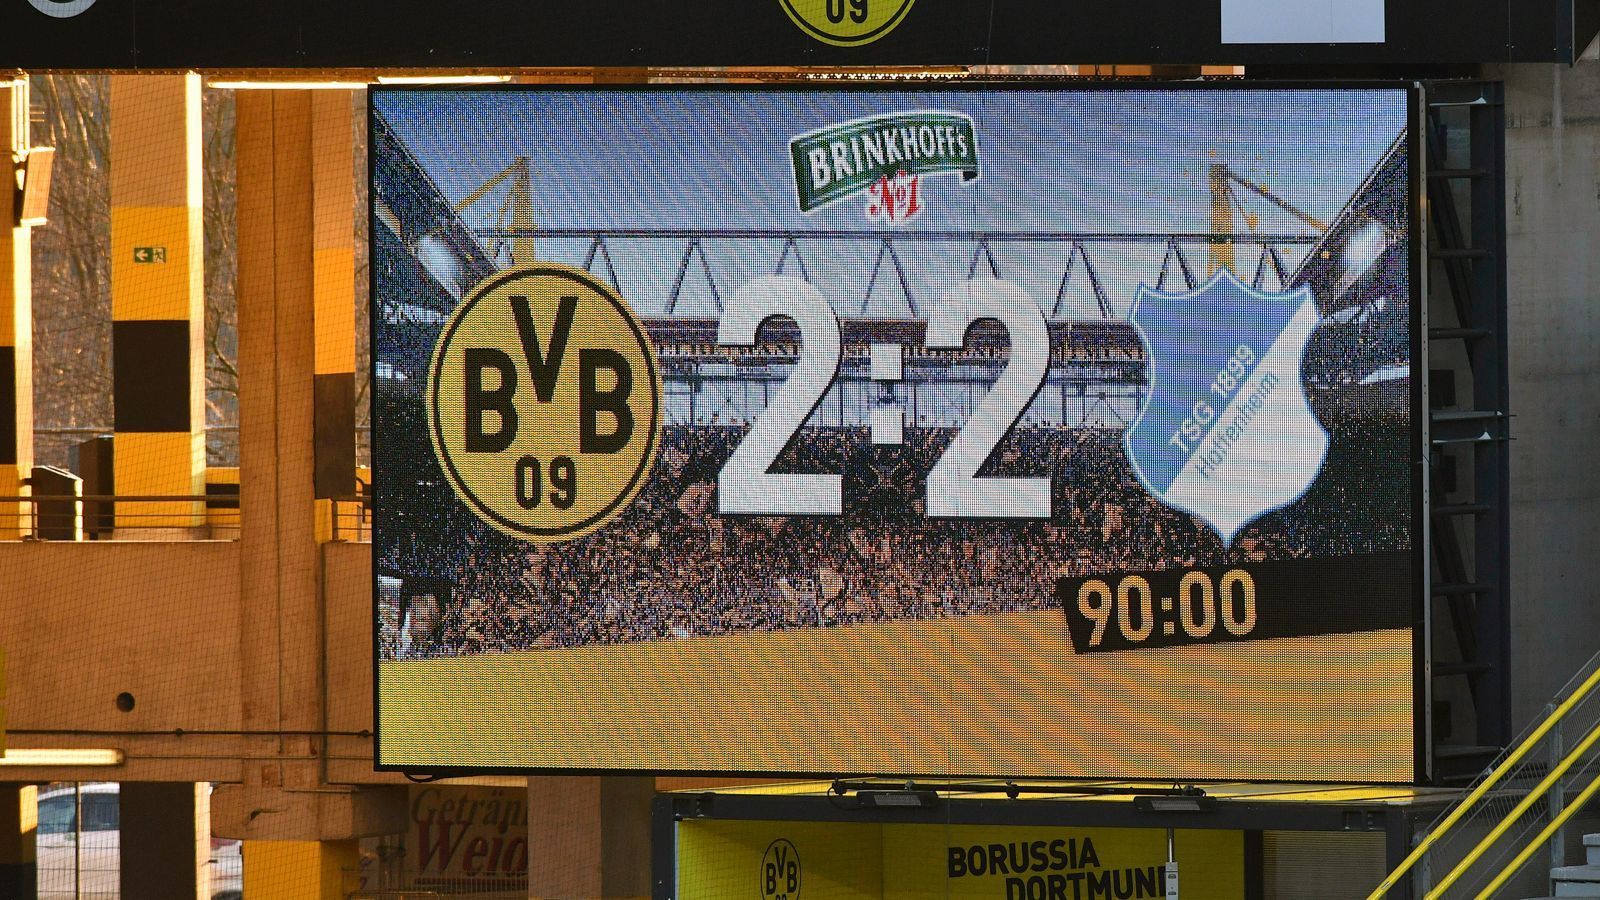 
                <strong>Spitzenplatzierung in Gefahr</strong><br>
                Spätestens nach dem 2:2 gegen Hoffenheim sollte bei Dortmund Alarmstufe Rot herrschen. Die Borussia schmiert in der Tabelle immer mehr ab. Lag der Rückstand auf den damaligen Tabellenführer Leverkusen zum Zeitpunkt der Favre-Entlassung noch bei überschaubaren sechs Punkten, liegt der BVB mittlerweile 15 Zähler hinter dem aktuellen Tabellenersten FC Bayern München, der noch dazu ein Spiel weniger absolviert hat. Die Titelträume kann Dortmund, Meister von 2011 und 2012, also ad acta legen. Vielmehr geht es darum, nicht auch noch den Anschluss an die Champions-League-Ränge aus den Augen zu verlieren. Nach dem Remis gegen die TSG liegt Dortmund nämlich nur auf dem sechsten Rang. Zum Vergleich: Favre war selbst nach der 1:5-Klatsche gegen Stuttgart, die sein Aus besiegelte, nach elf Spieltagen immer noch Fünfter und damit besser platziert als der Traditionsverein nach zwei Monaten der Ära Terzic.
              